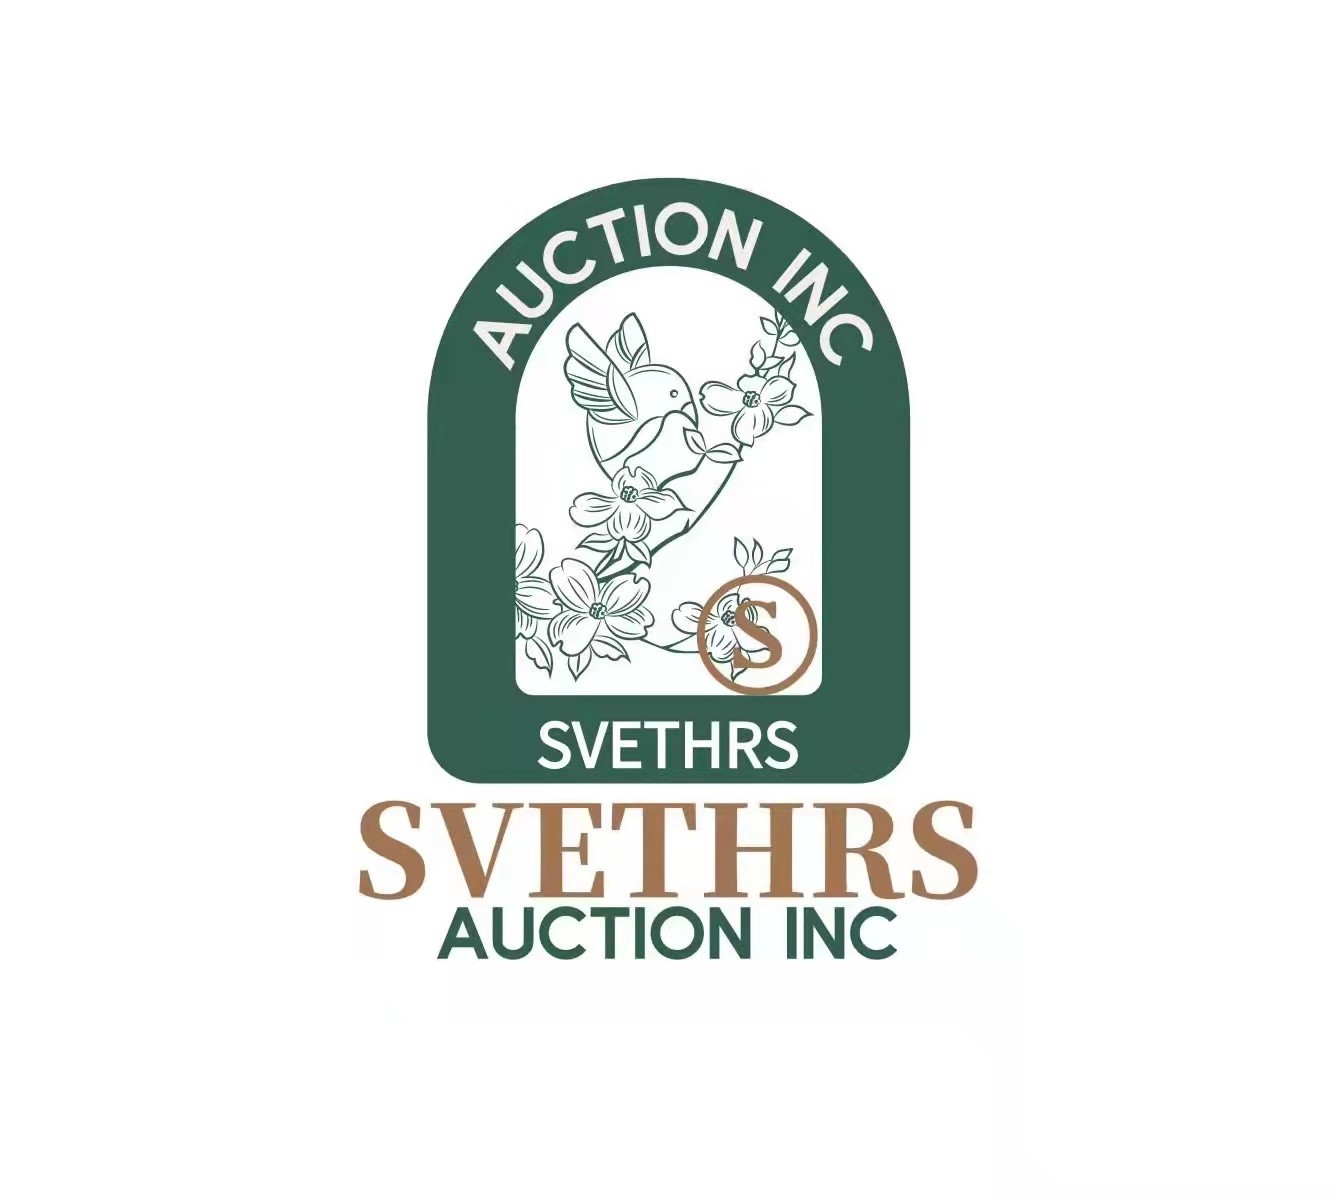 SVETHRS Auction  INC